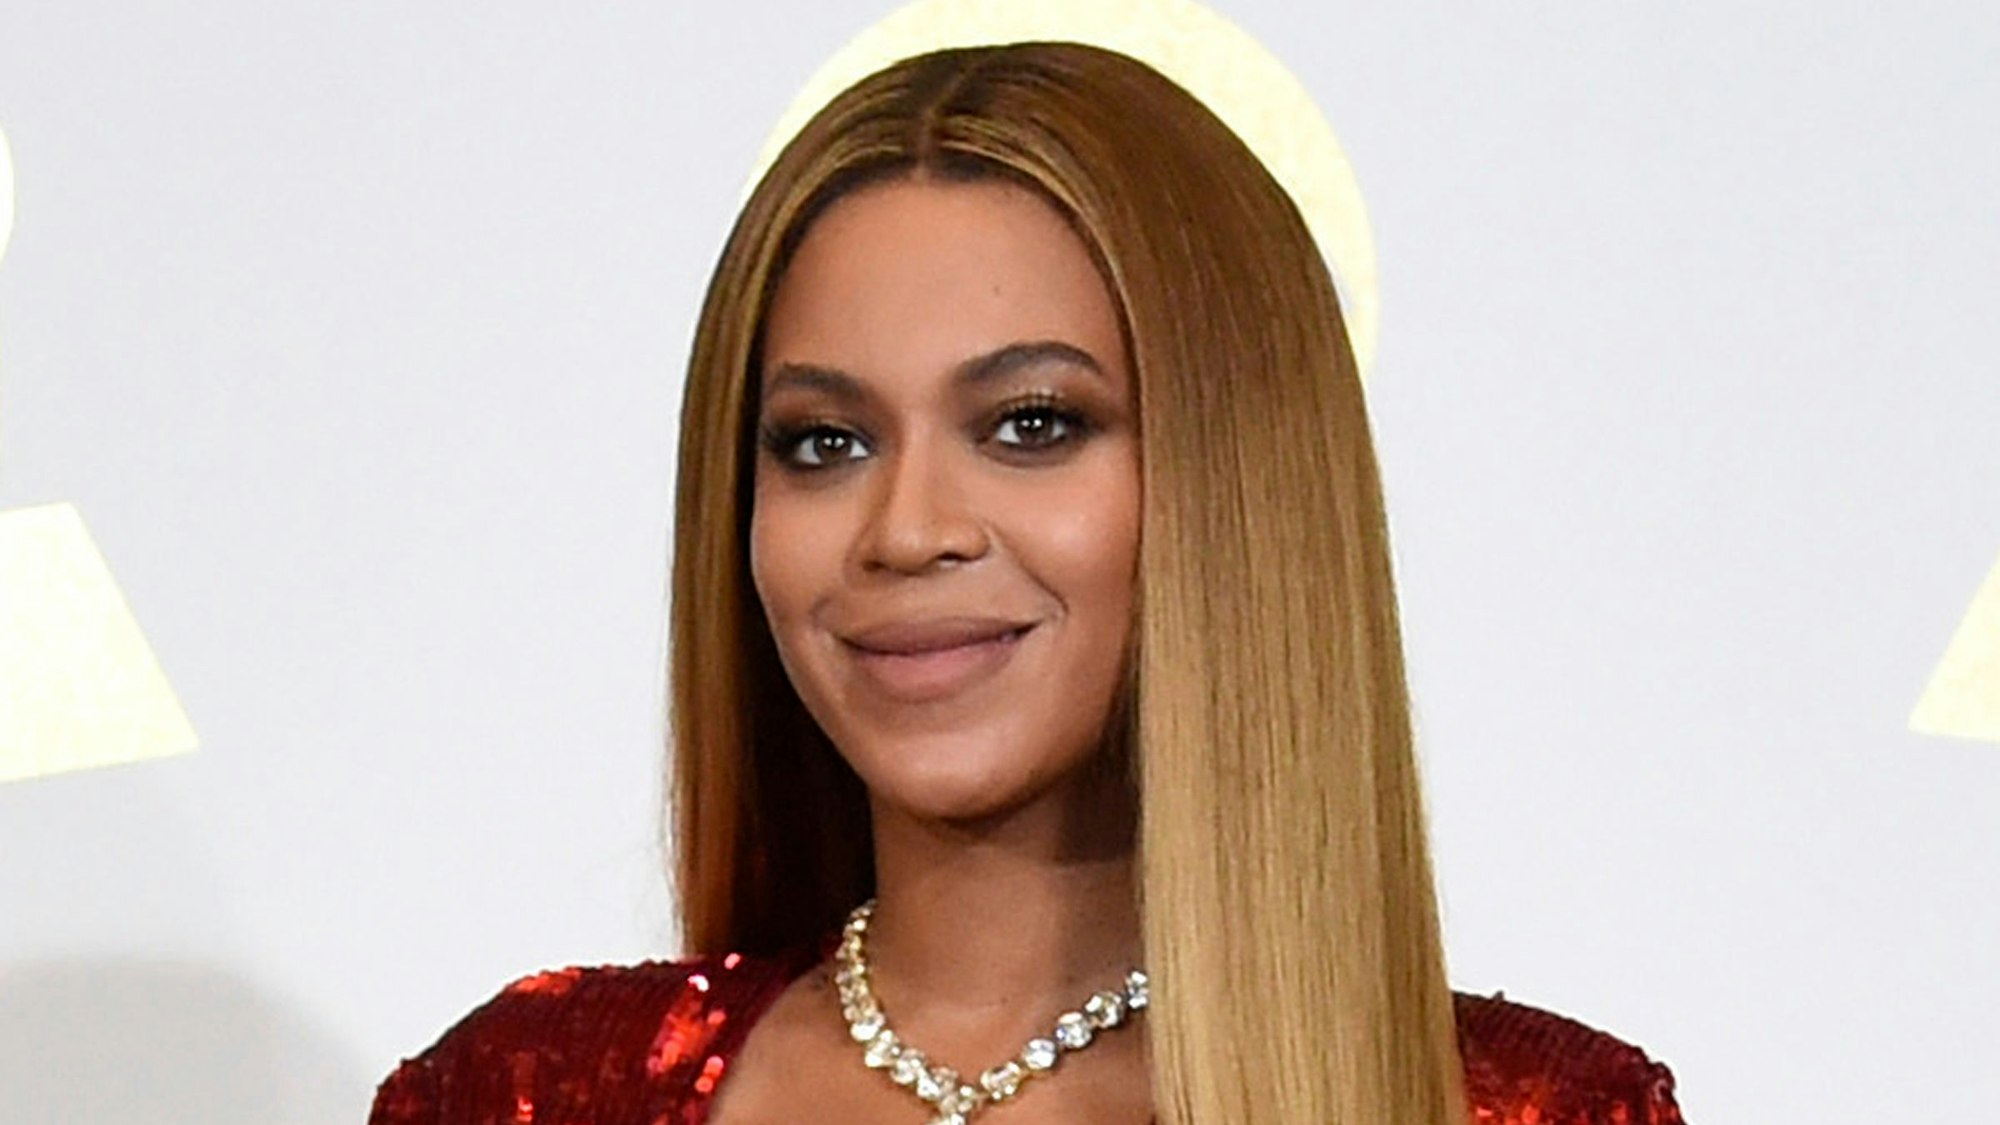 Sängerin Beyoncé bei der 59. Grammy-Verleihung. Beyoncé hat Details über die schwierige Geburt ihrer Zwillinge vor gut einem Jahr öffentlich gemacht.